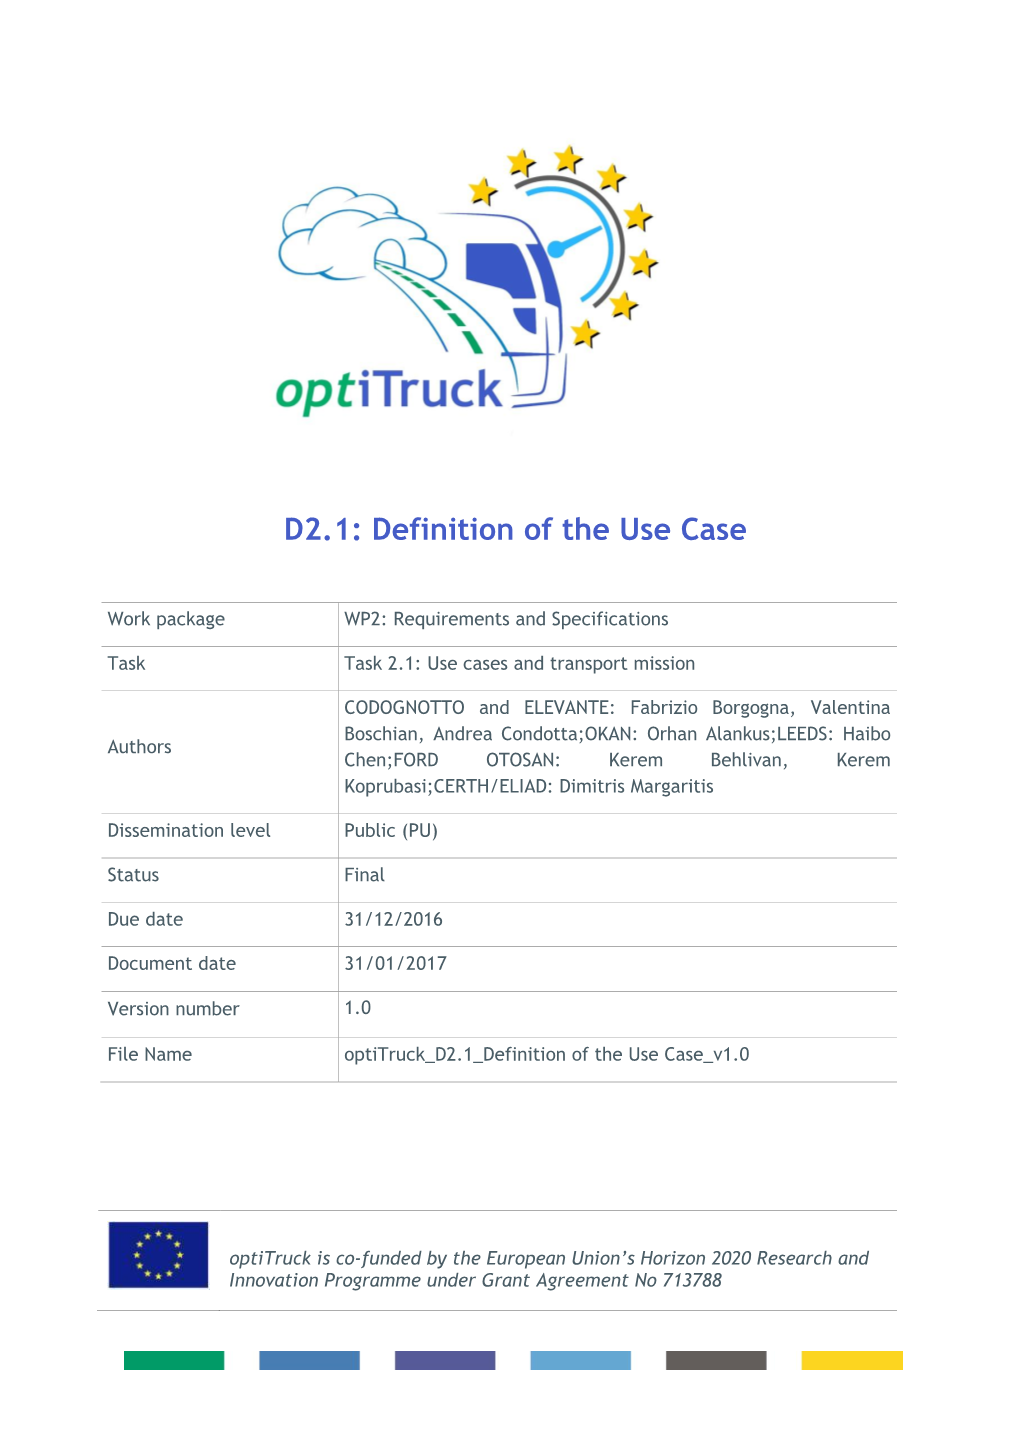 Optitruck D2.1 – Definition of the Use Case – V1.0